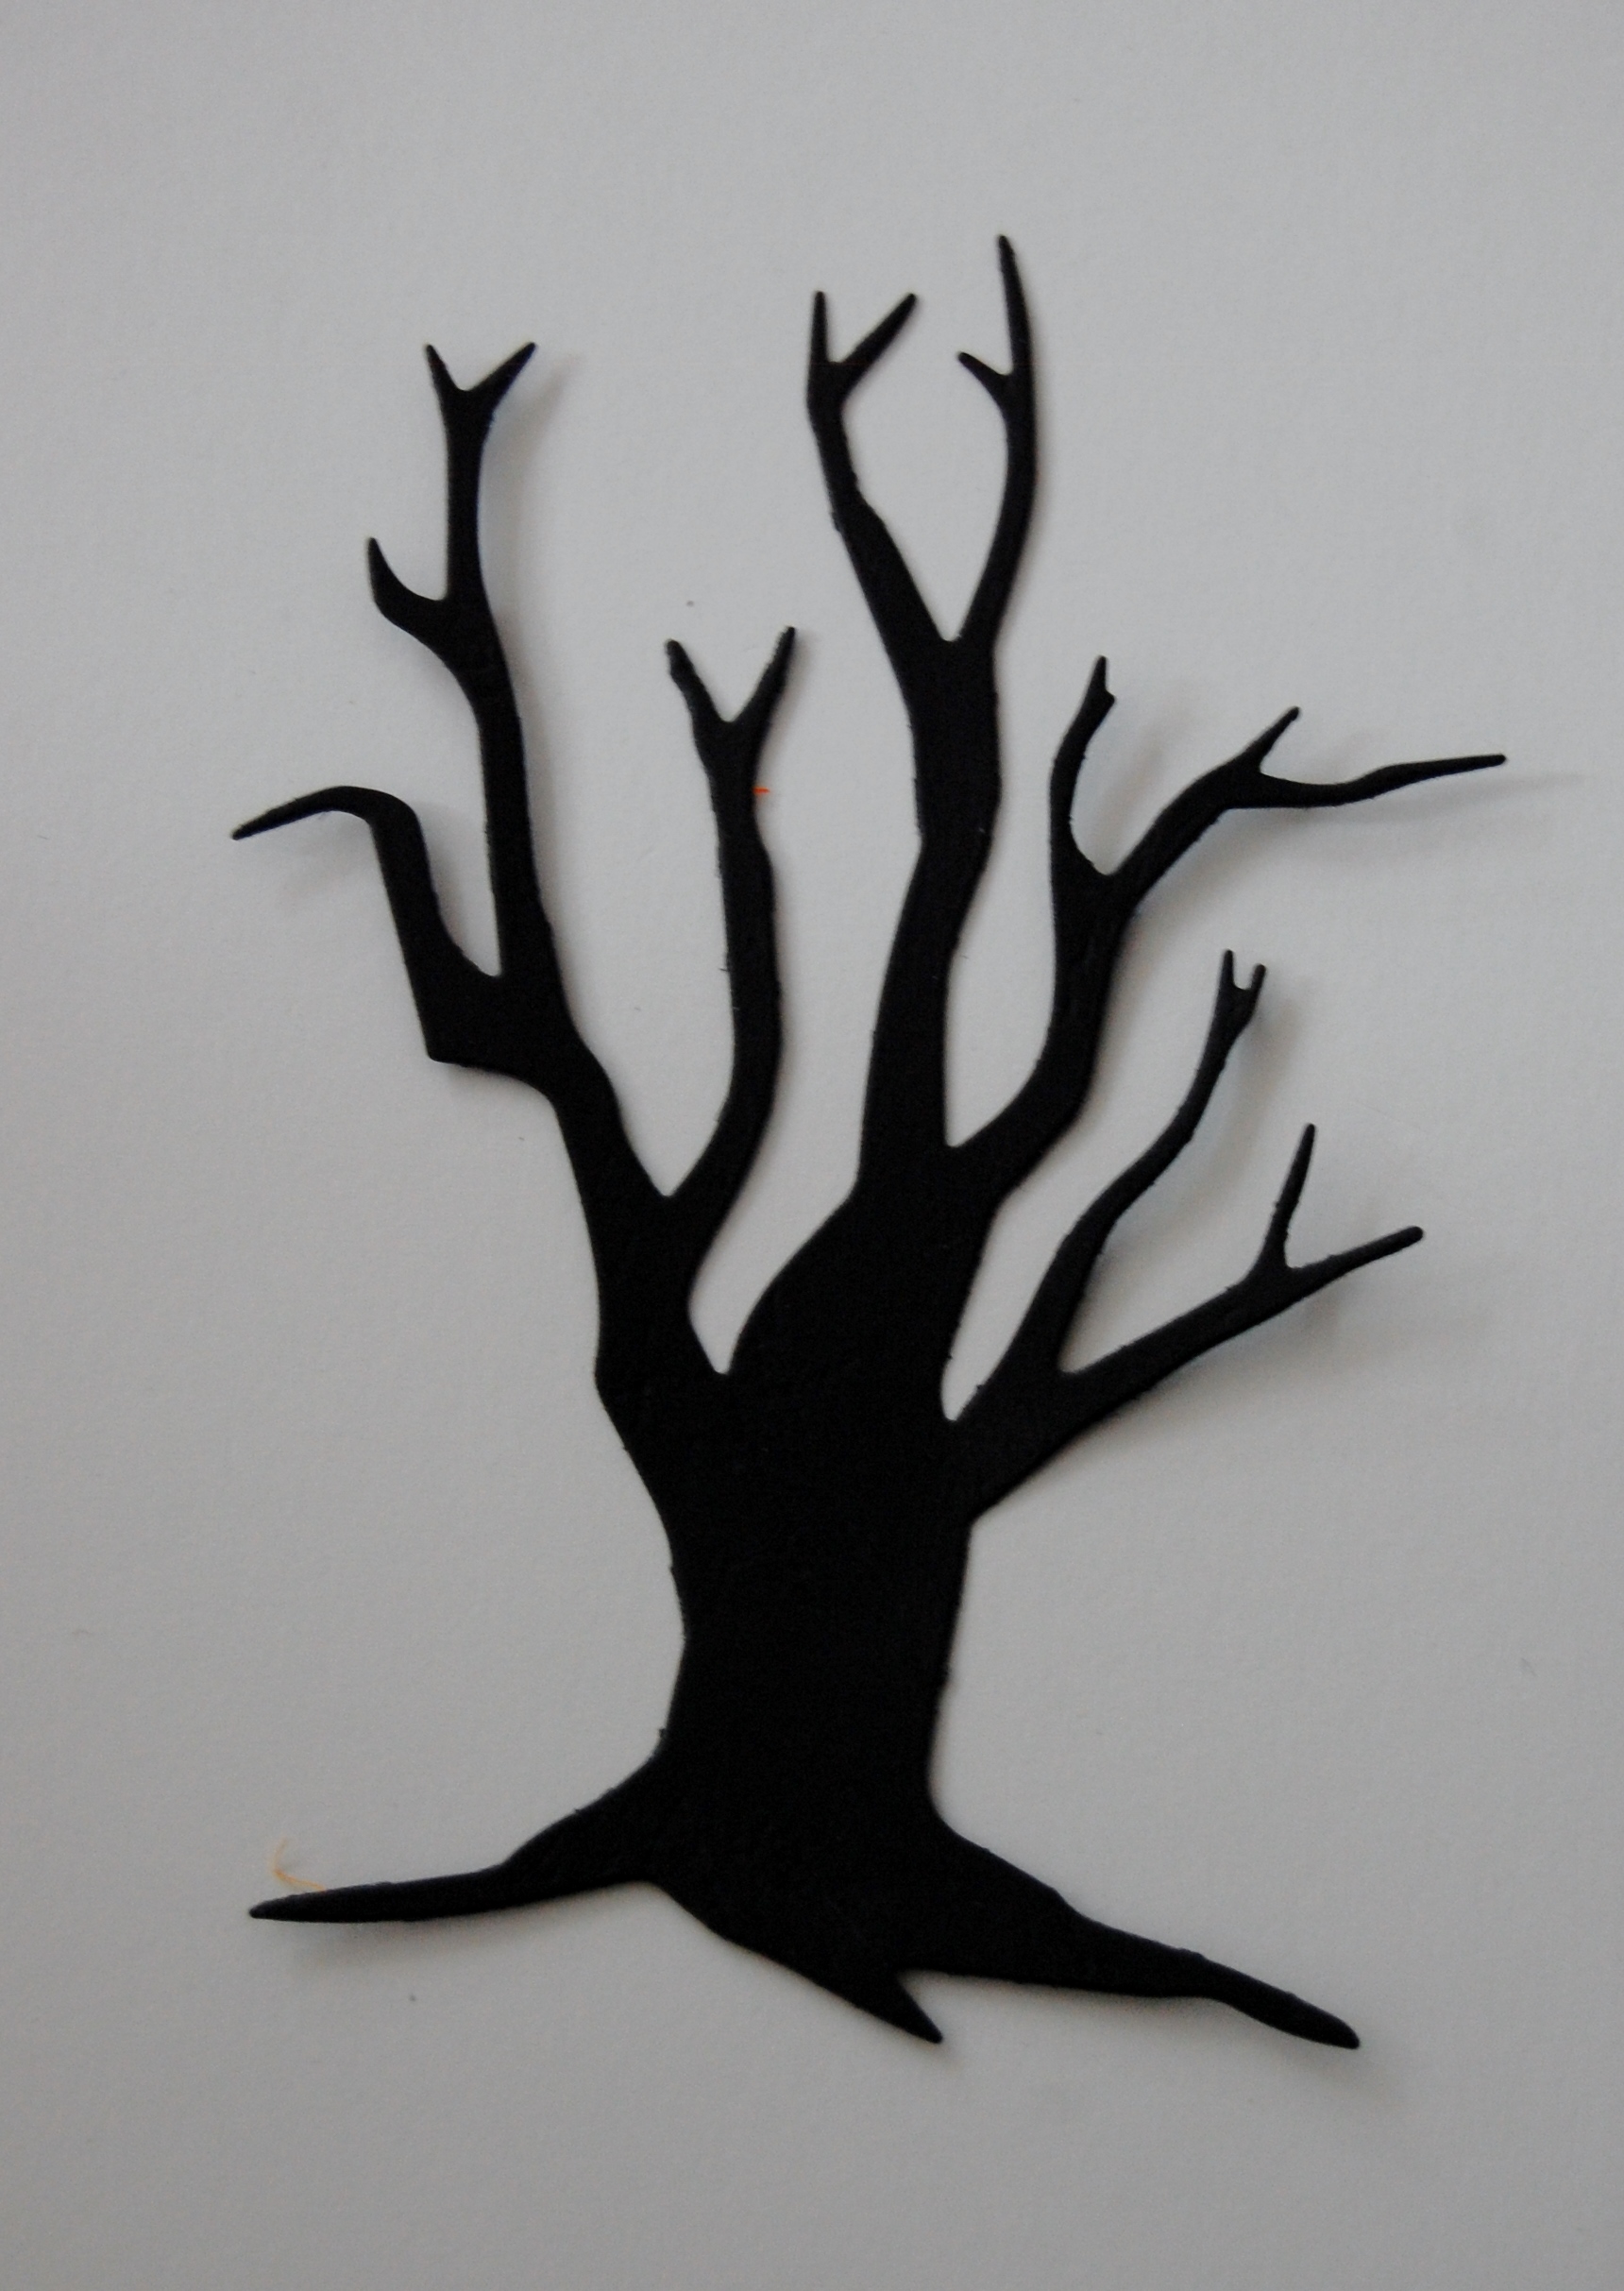 Diemond Dies Spooky Tree Die Cut